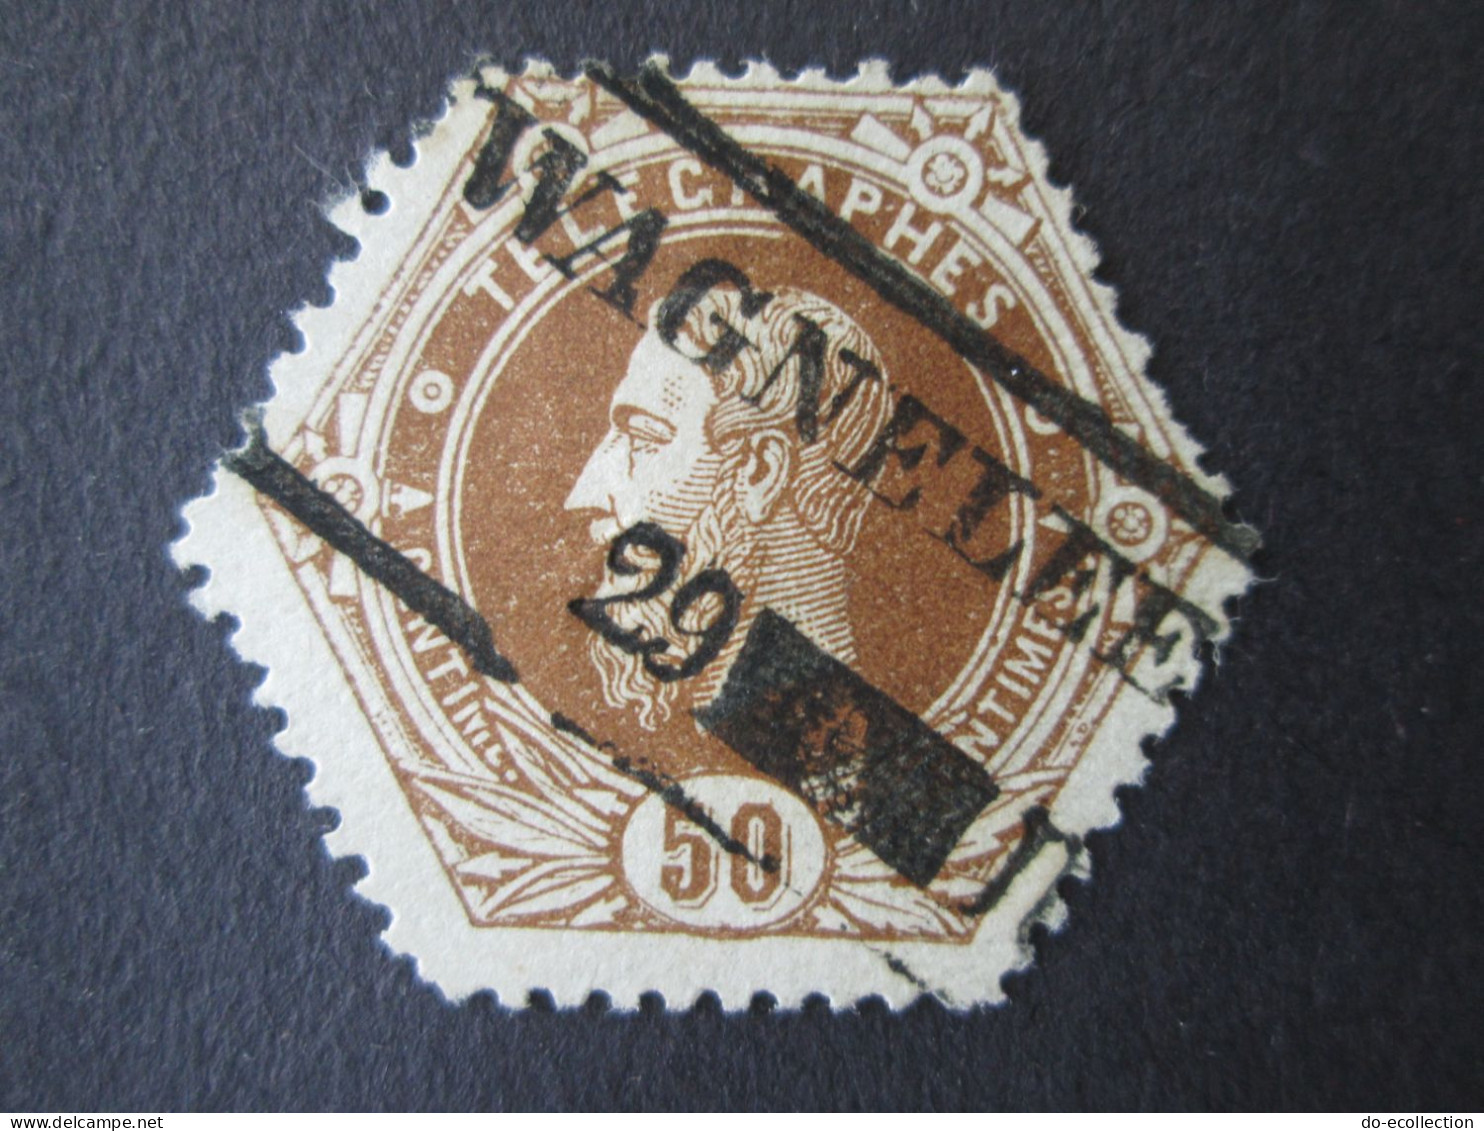 BELGIQUE Timbre Télégraphe 1871 50c WAGNELEE Leopold II Belgie Belgium Timbre Stamp - Telegraafzegels [TG]